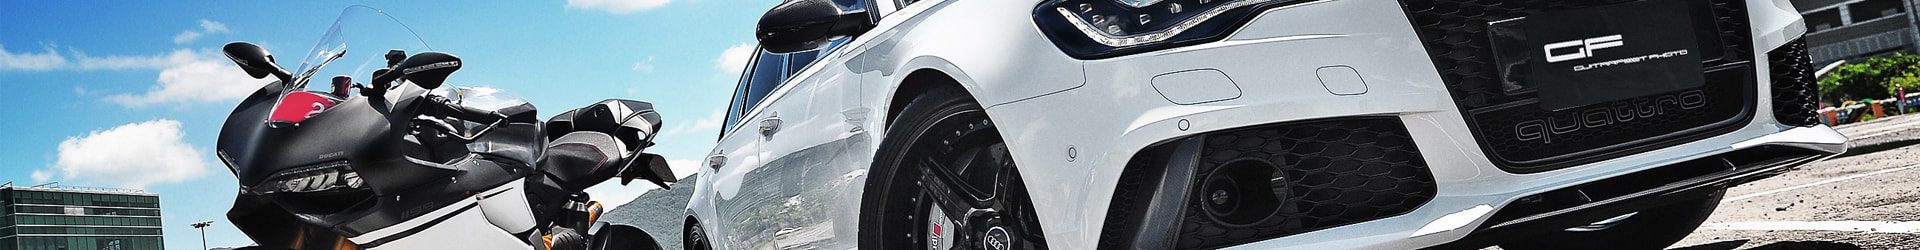 –痞子英雄– BMW F10 M5 & Porsche 991 GTS 重裝開箱拍攝